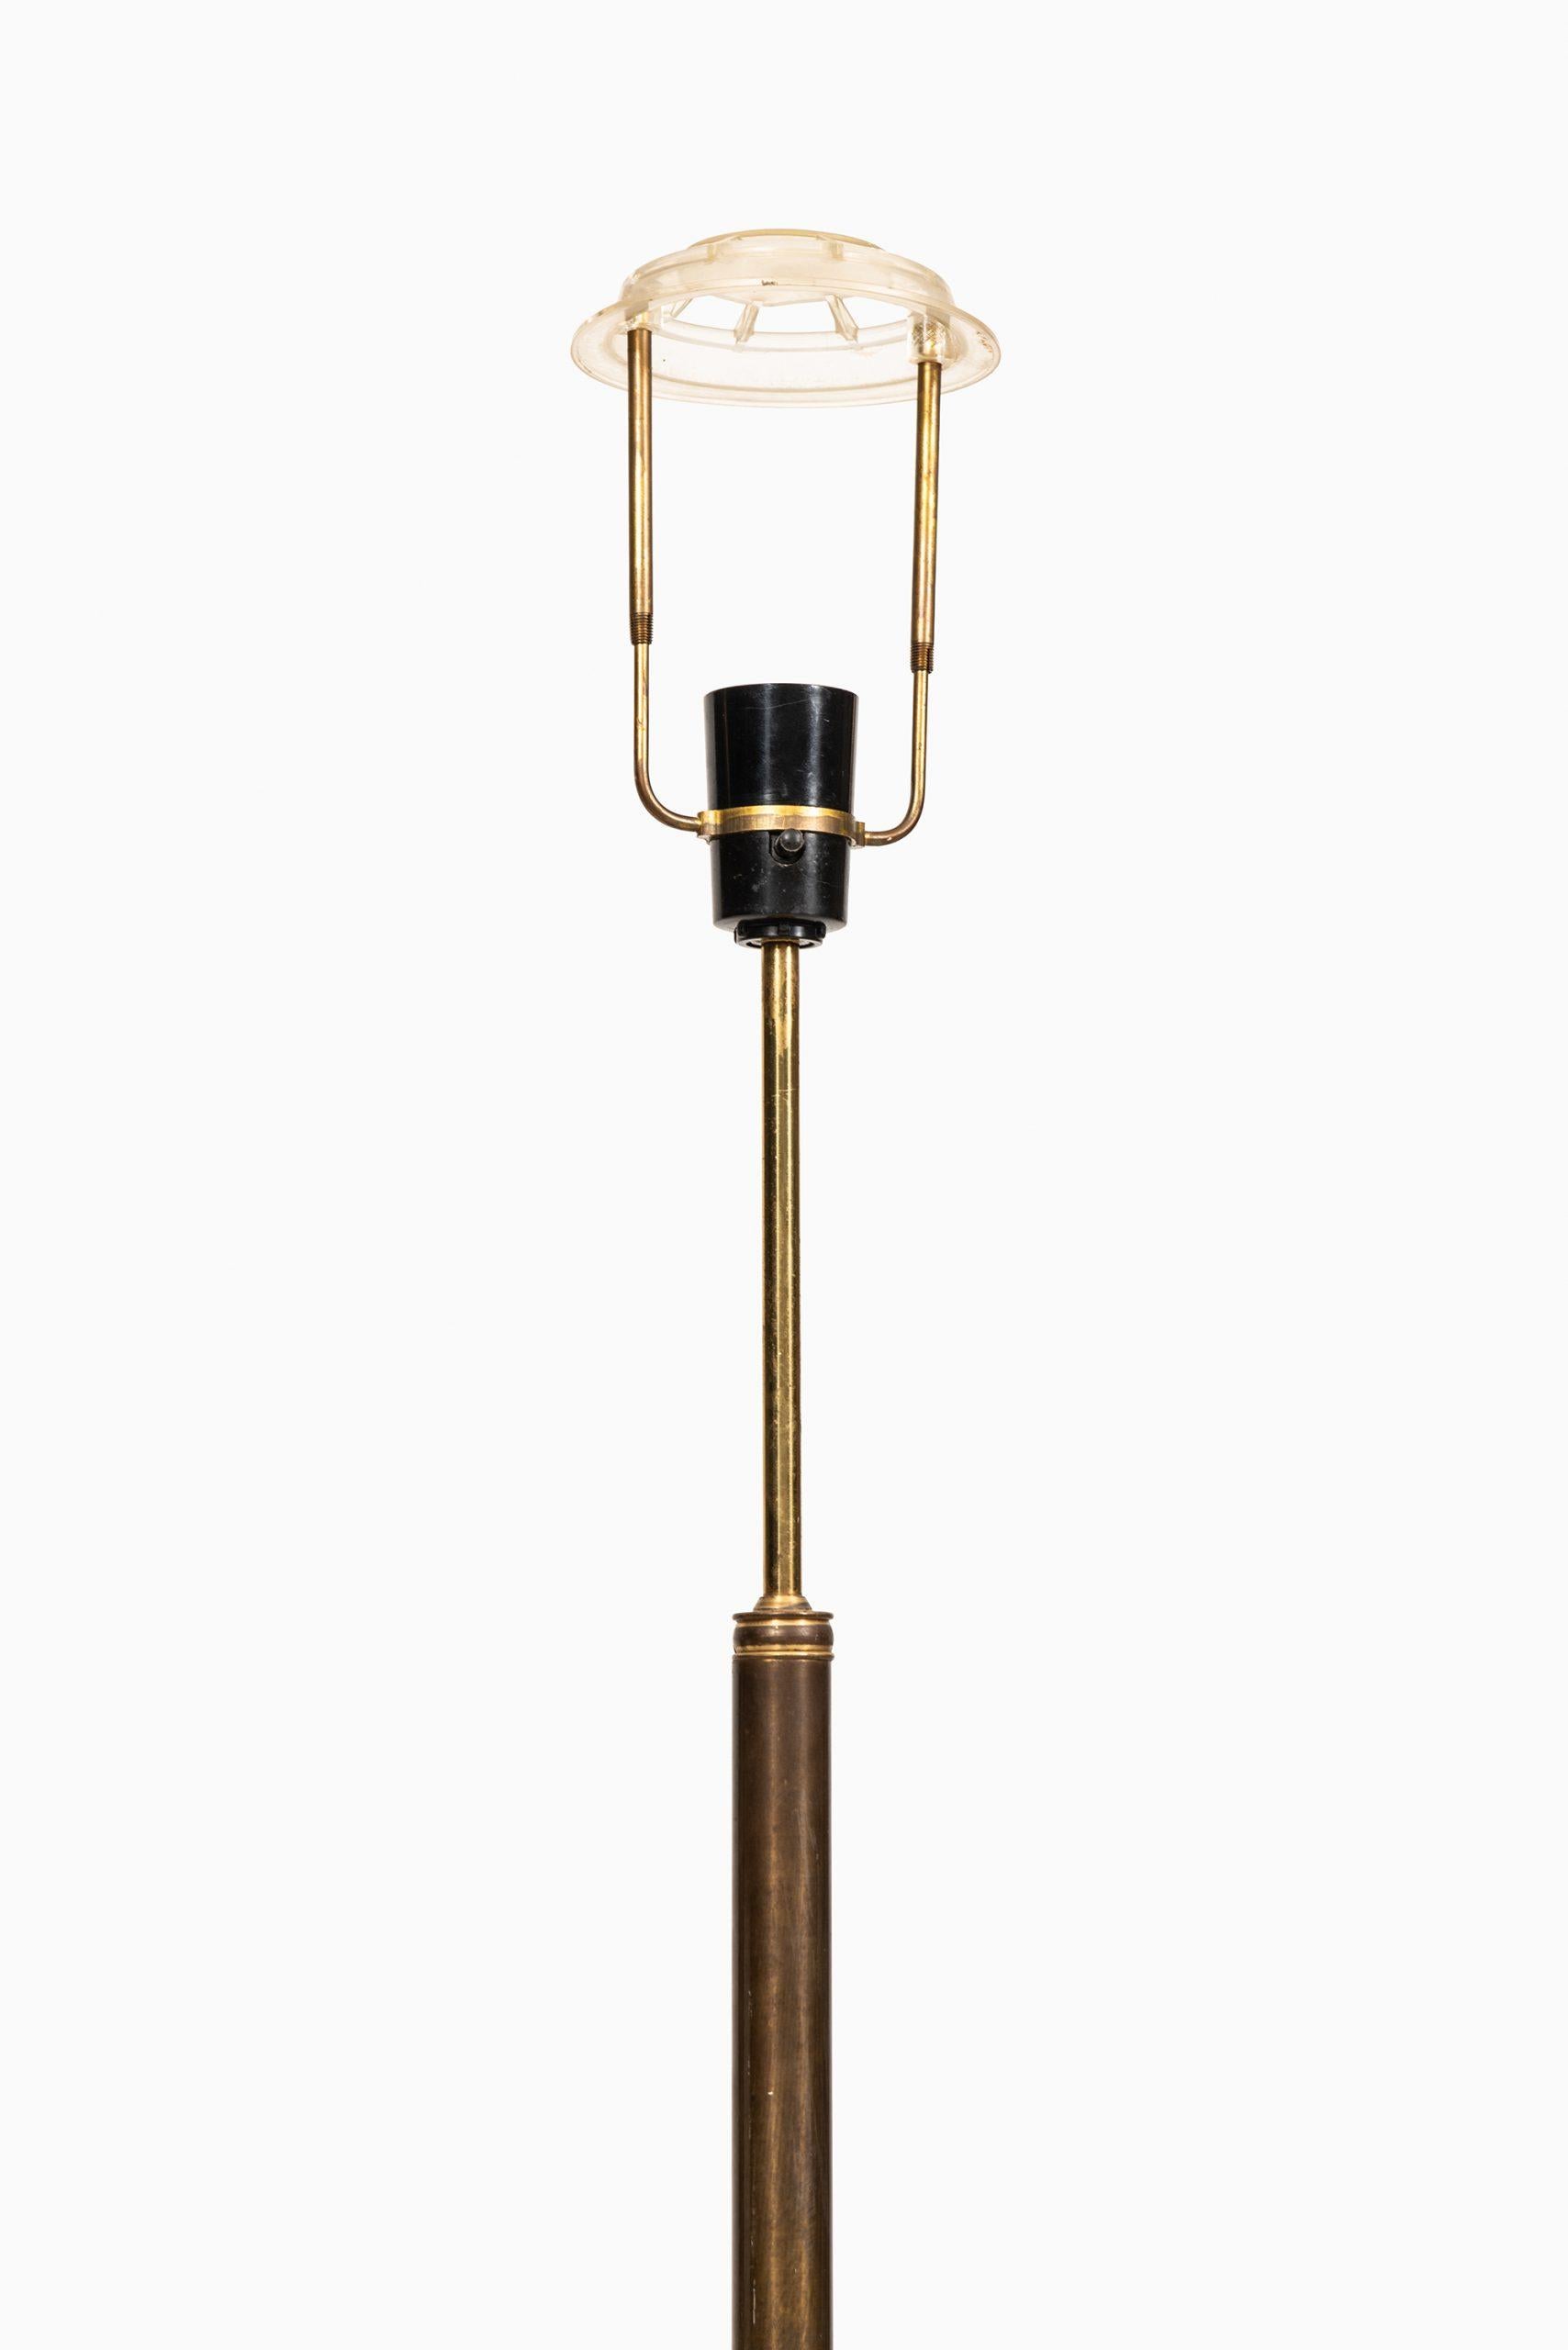 Brass Sven Mejlstrøm Floor Lamps Produced by Mejlstrøms Belysning in Norway For Sale